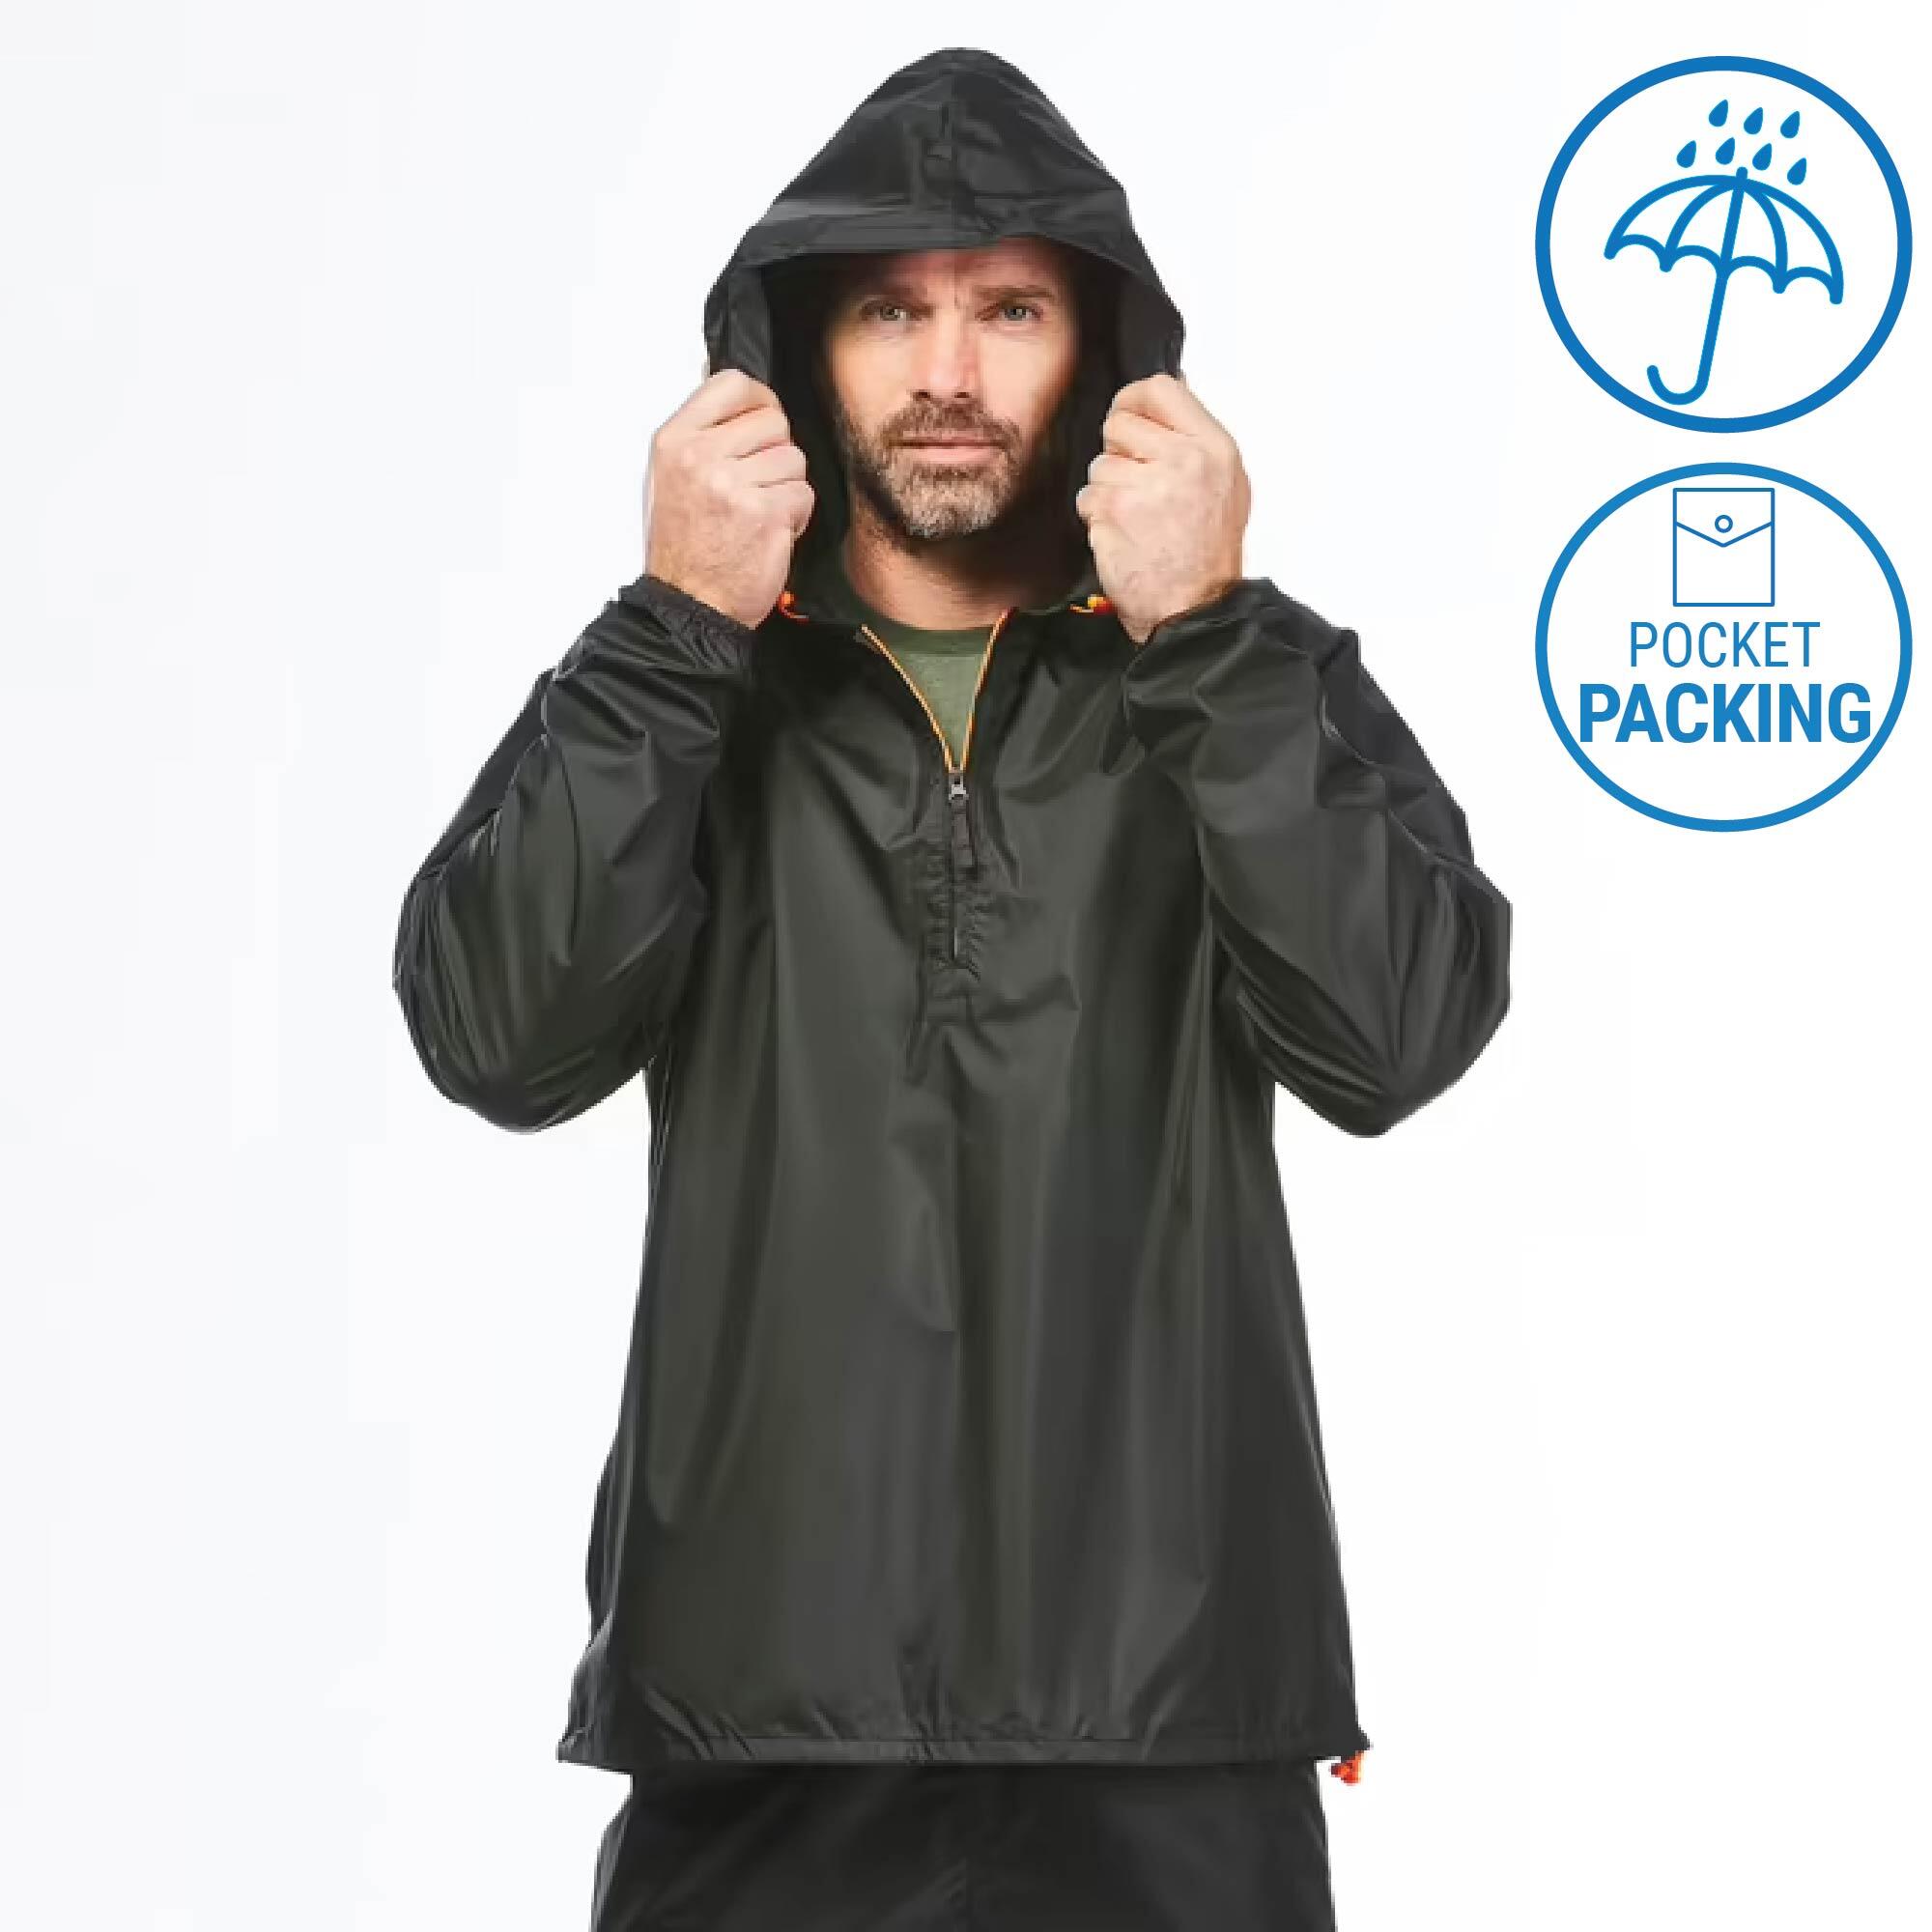 Men's Rain Jackets- Buy Rain Jackets for Men Online at Columbia Sportswear